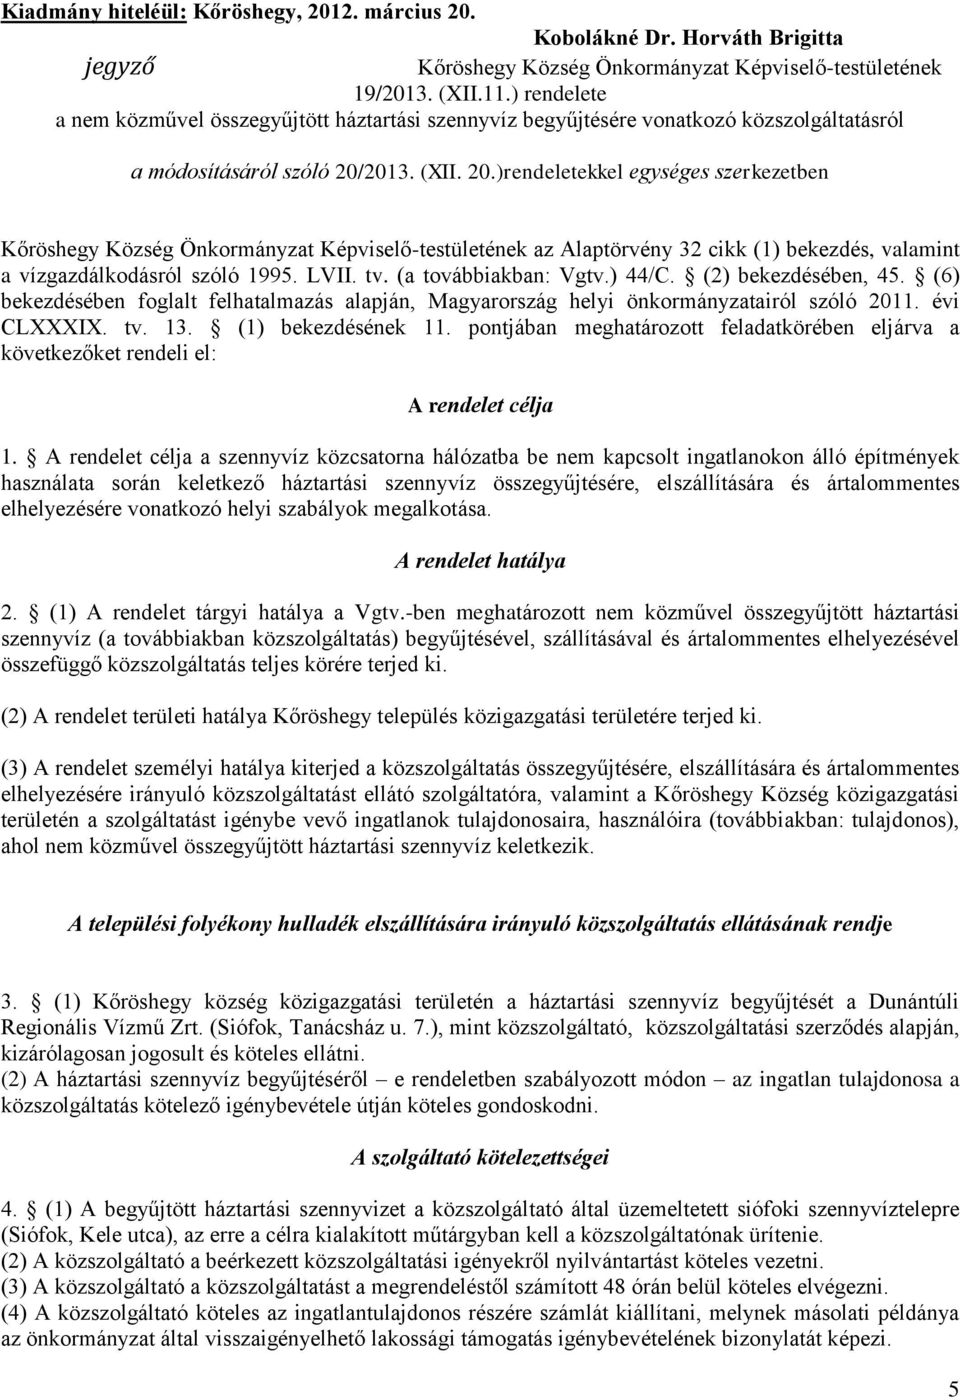 2013. (XII. 20.)rendeletekkel egységes szerkezetben Kőröshegy Község Önkormányzat Képviselő-testületének az Alaptörvény 32 cikk (1) bekezdés, valamint a vízgazdálkodásról szóló 1995. LVII. tv.